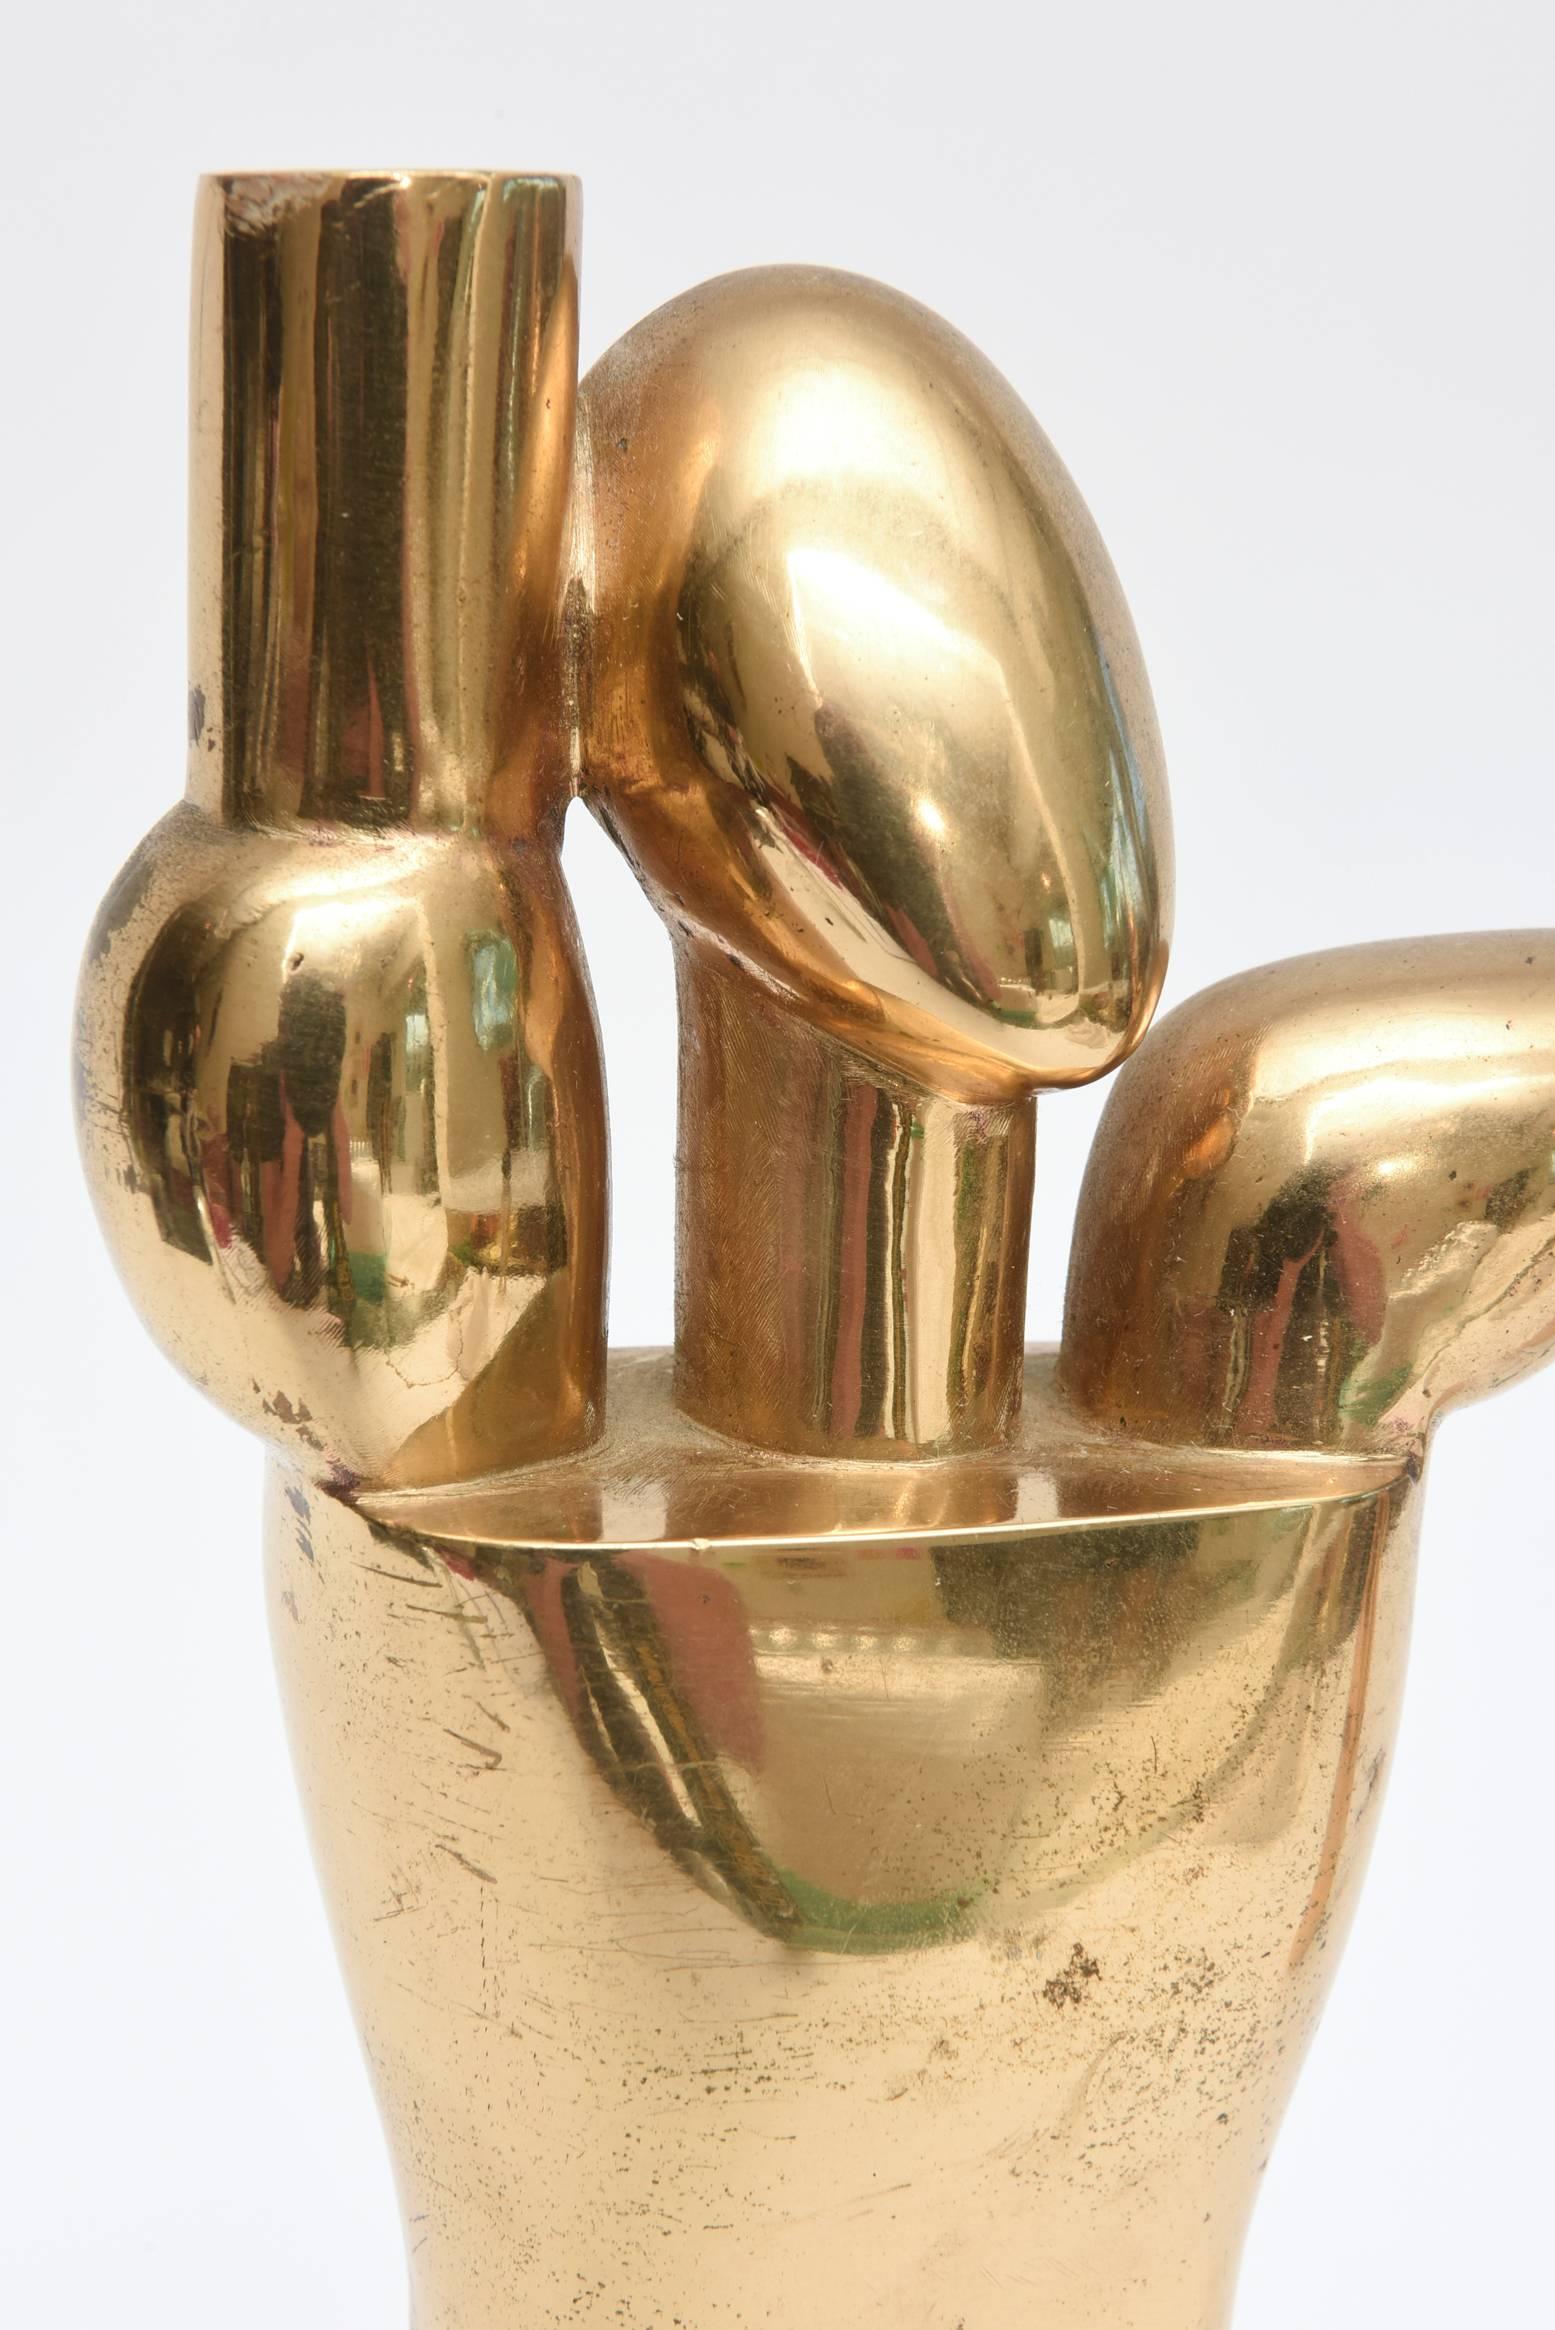 Cette étonnante paire de sculptures modernistes en bronze vintage est signée et datée par Hugo Rabaey dans un monogramme. Nous sommes en 1977. Ils peuvent être présentés sous de nombreuses formes et positions. Les formes cubistes et les formes sont